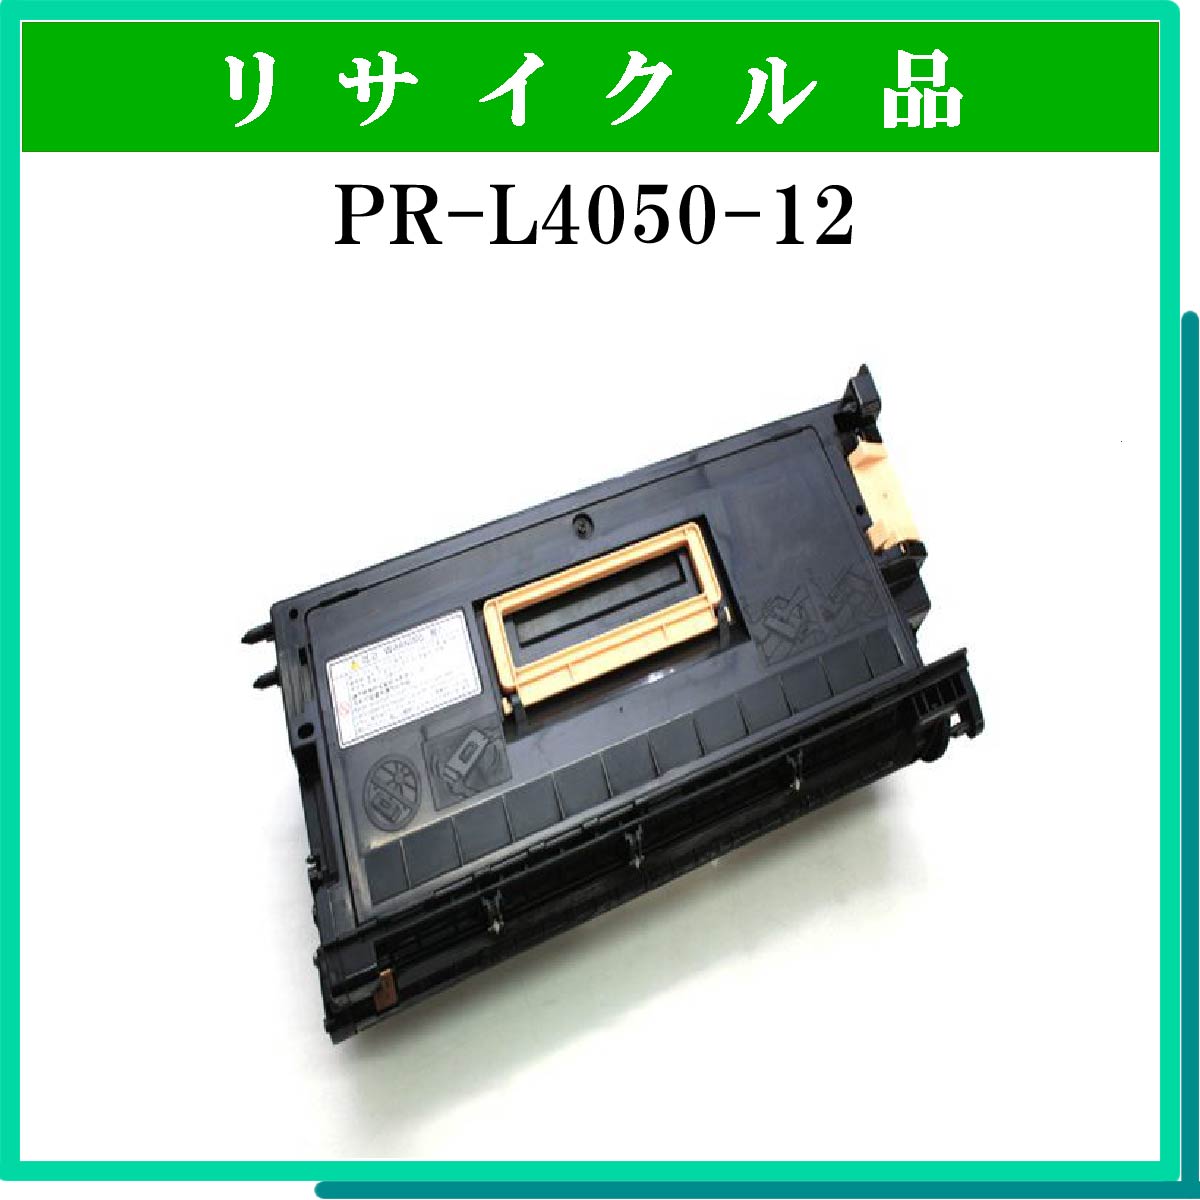 PR-L4050-12